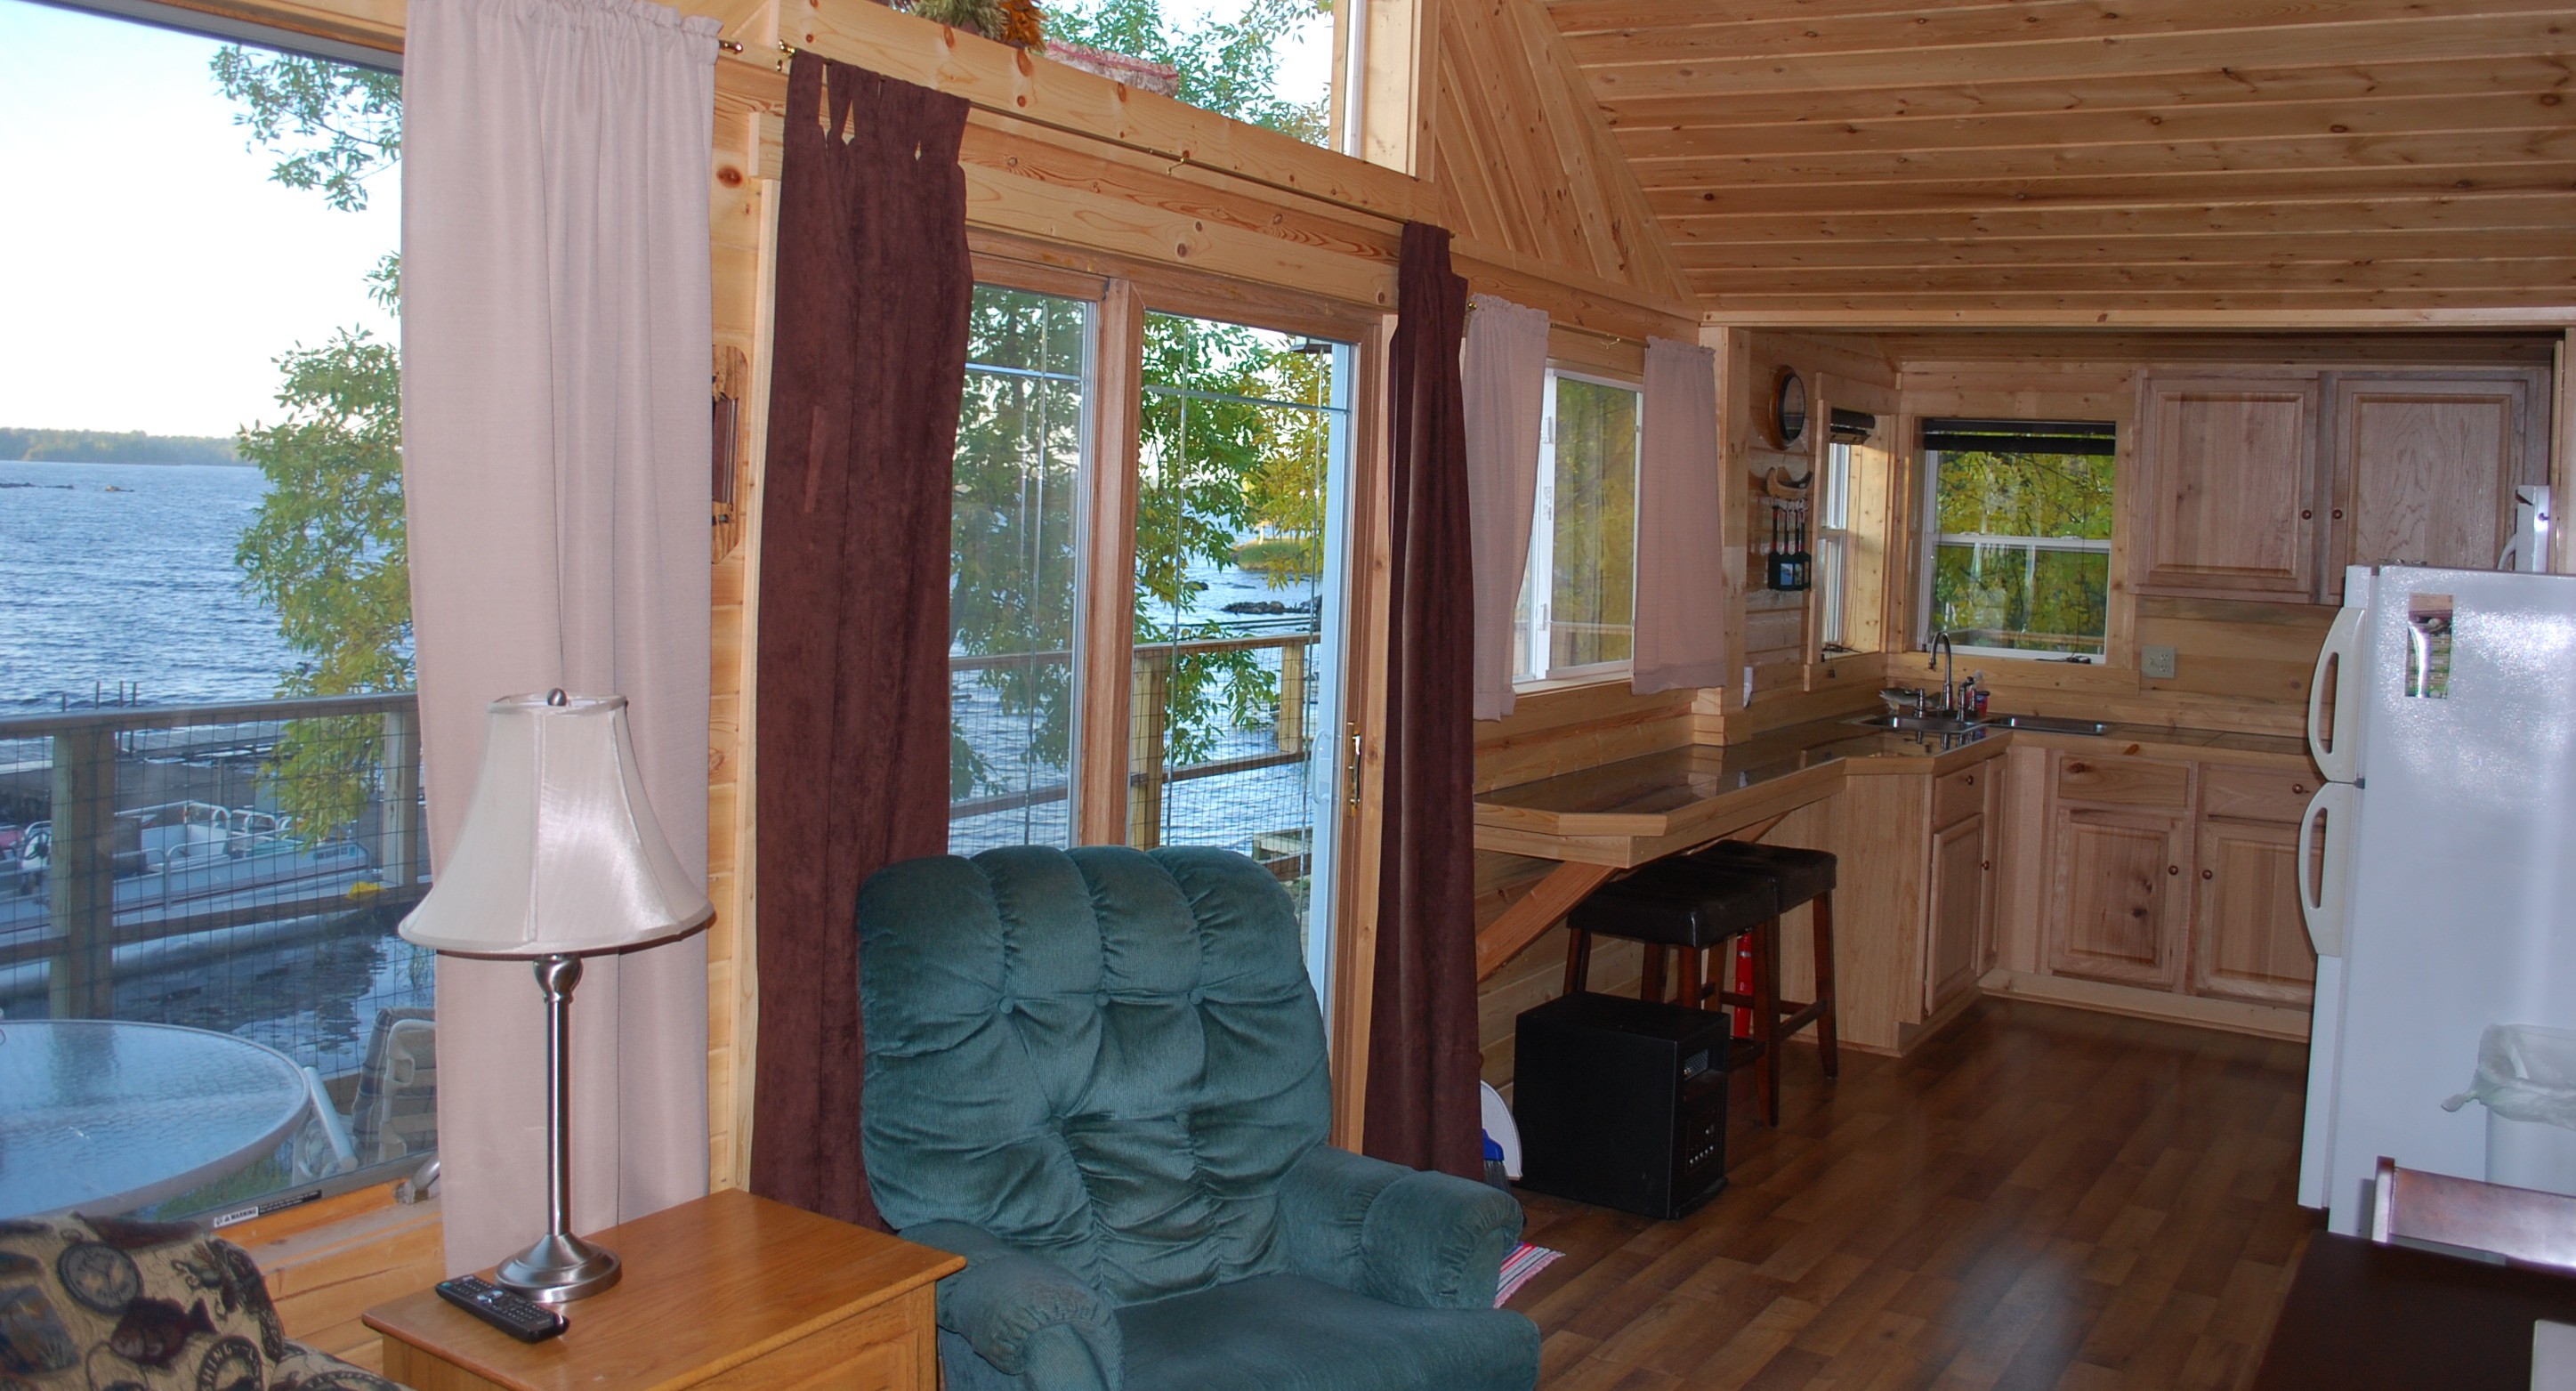 Interior of Cabin